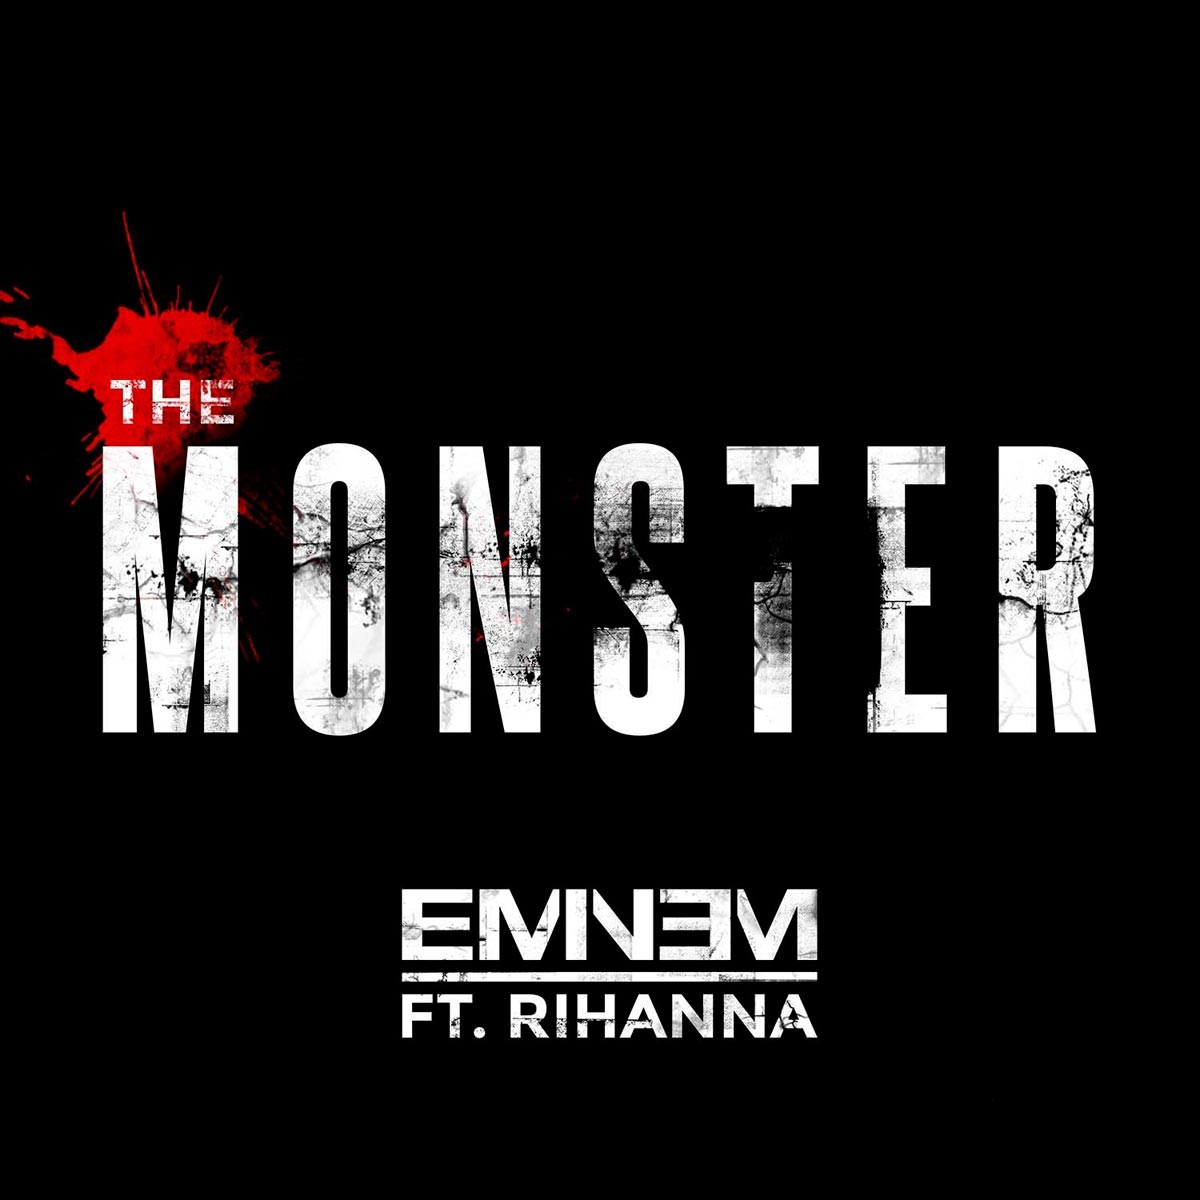 Eminem con Rihanna: The monster, la portada de la canción